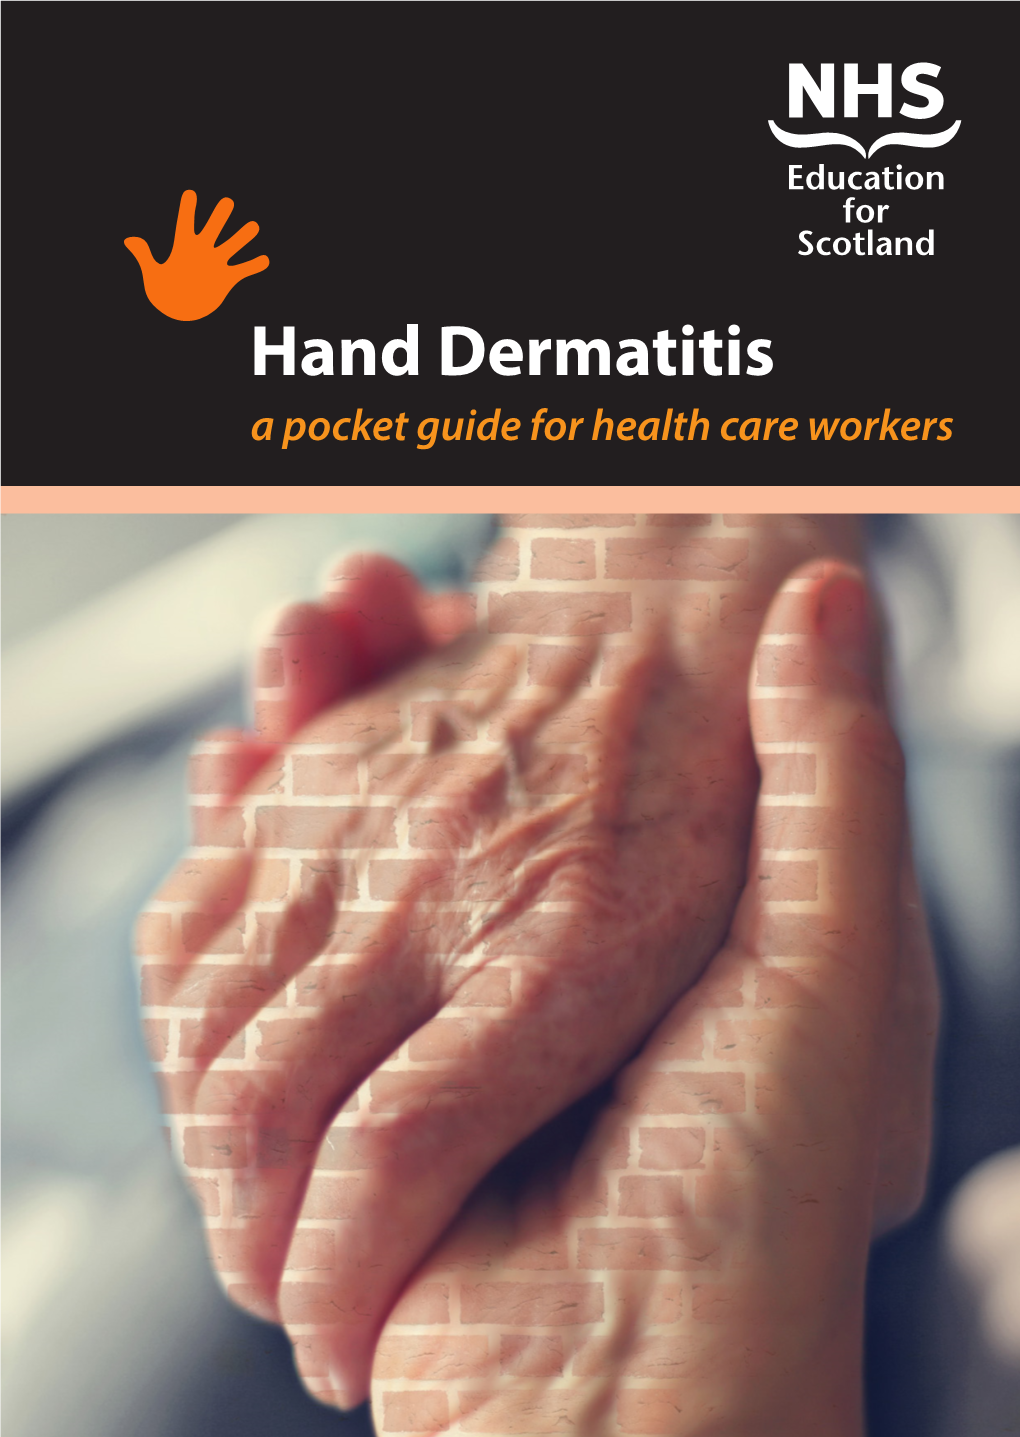 Hand Dermatitis Guide